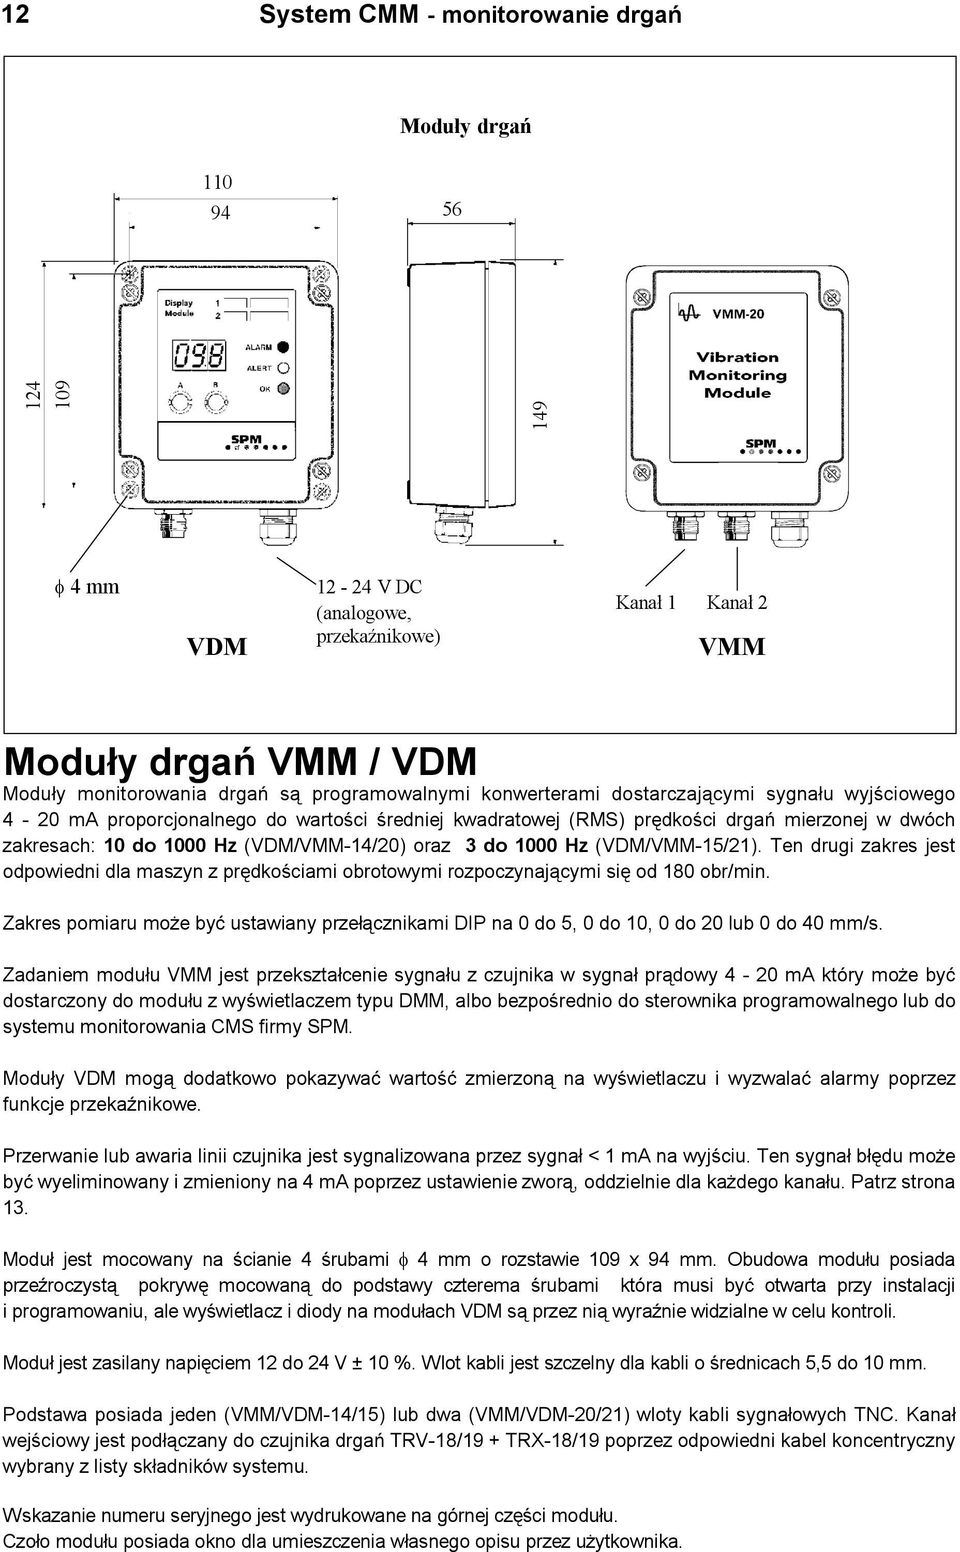 (VDM/VMM-14/20) oraz 3 do 1000 Hz (VDM/VMM-15/21). Ten drugi zakres jest odpowiedni dla maszyn z prêdkoœciami obrotowymi rozpoczynaj¹cymi siê od 180 obr/min.